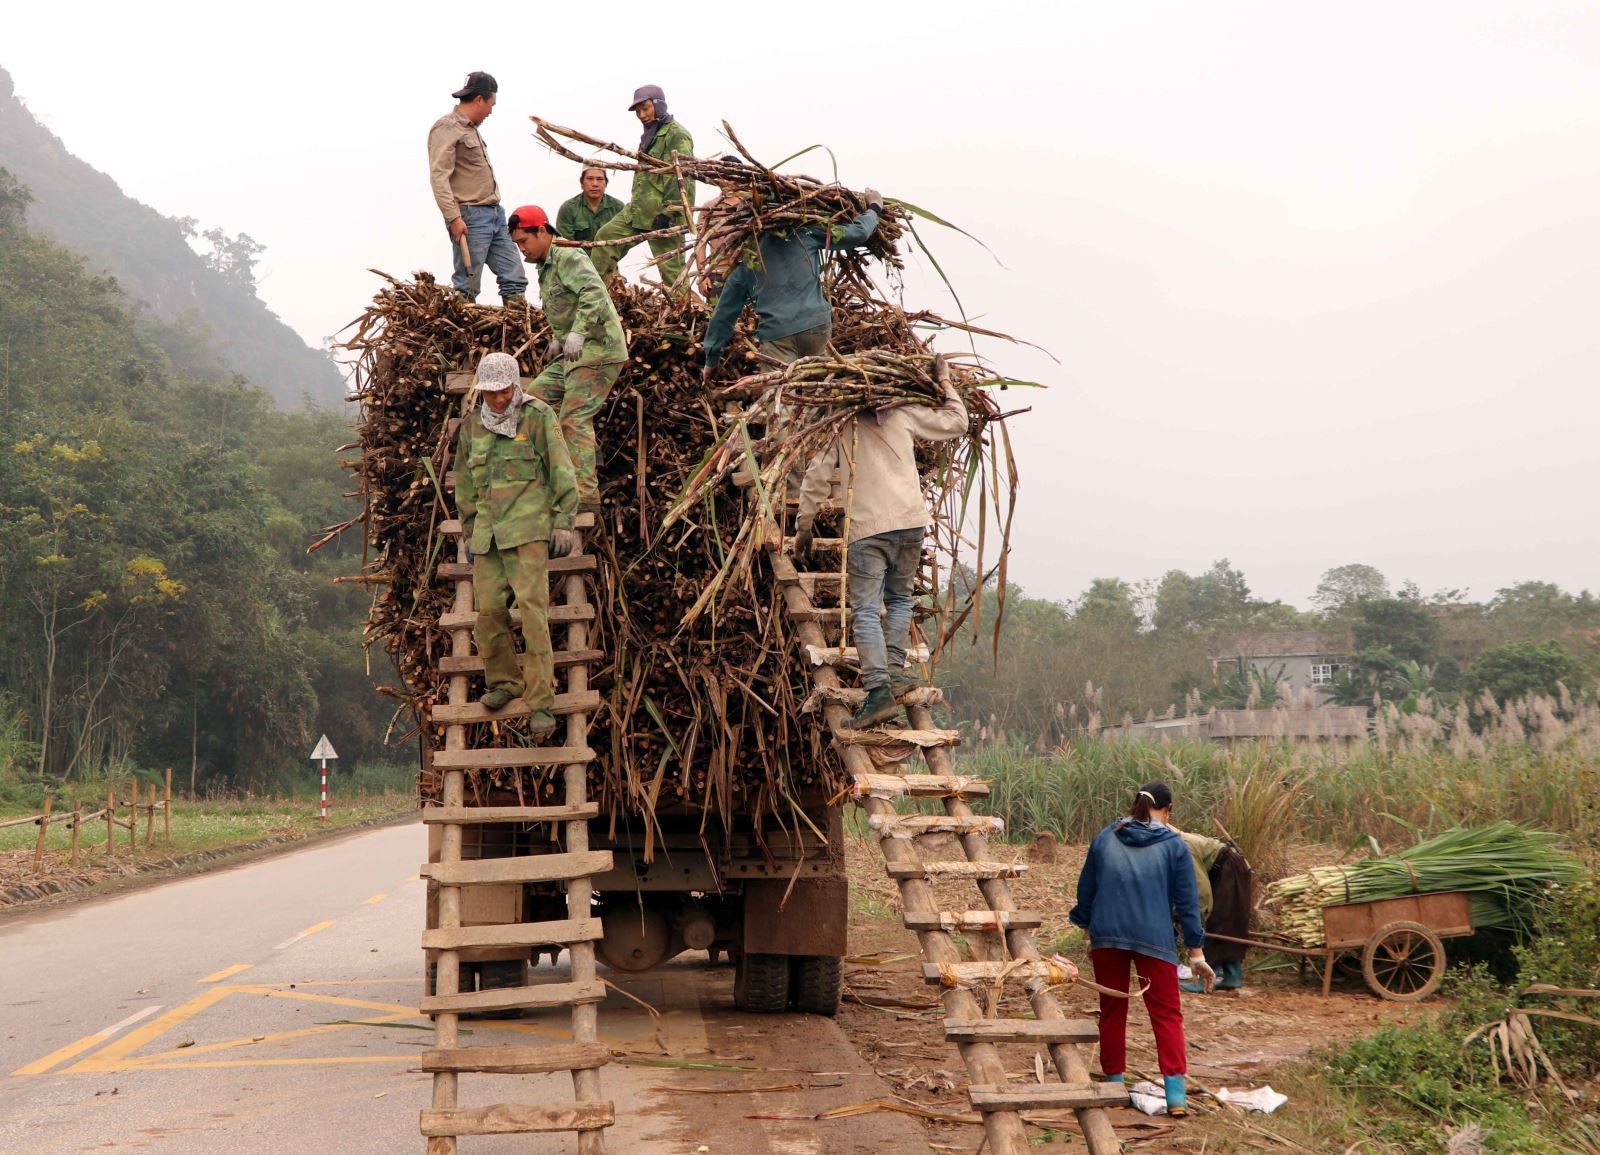 Giá thu mua mía nguyên liệu giảm 100 đồng/kg, lượng đường tồn kho lớn, vùng nguyên liệu bị thu hẹp đang đẩy cả doanh nghiệp và người trồng mía ở tỉnh Tuyên Quang đứng trước khó khăn. Ảnh: Quang Đán/TTXVN